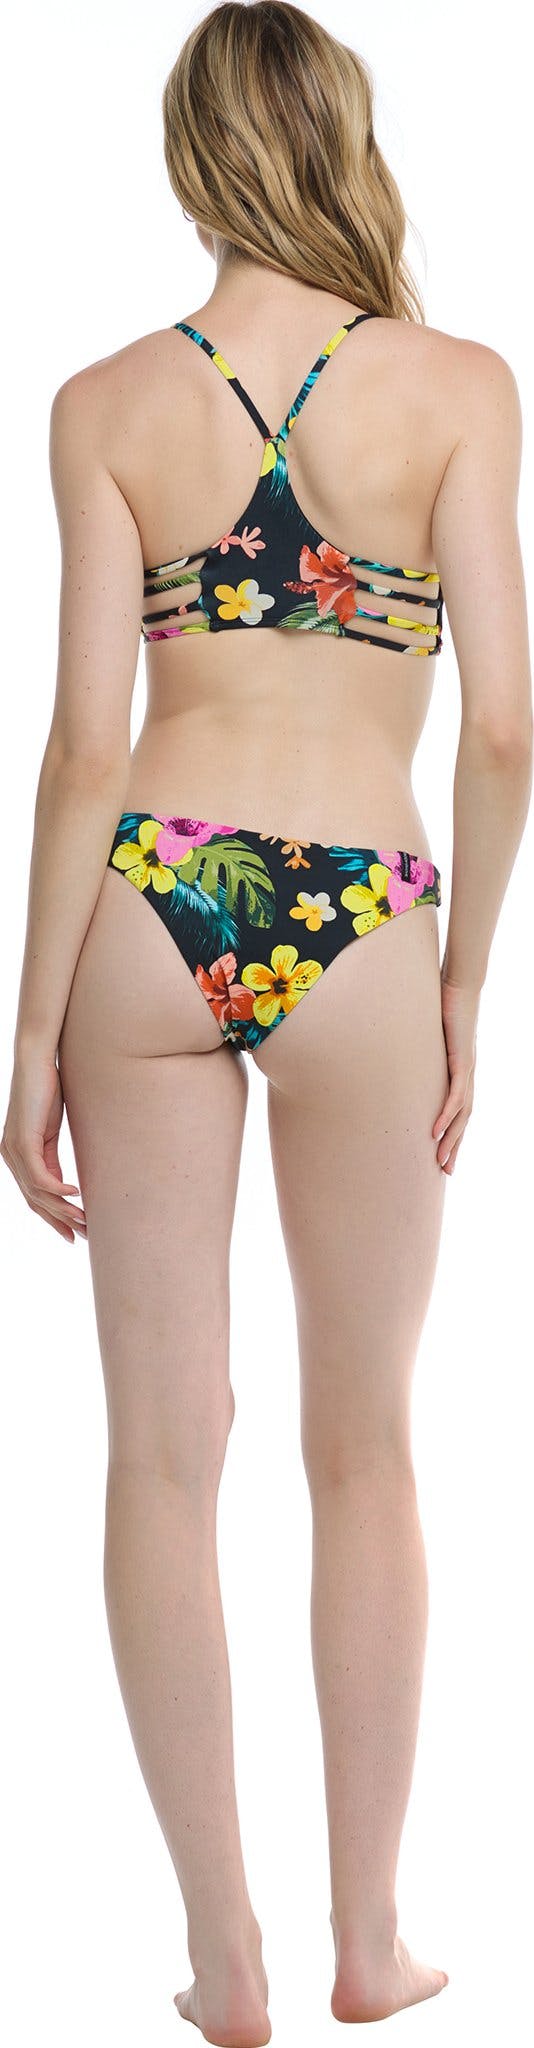 Numéro de l'image de la galerie de produits 2 pour le produit Bas de bikini Tropical Island Rosalia - Femme